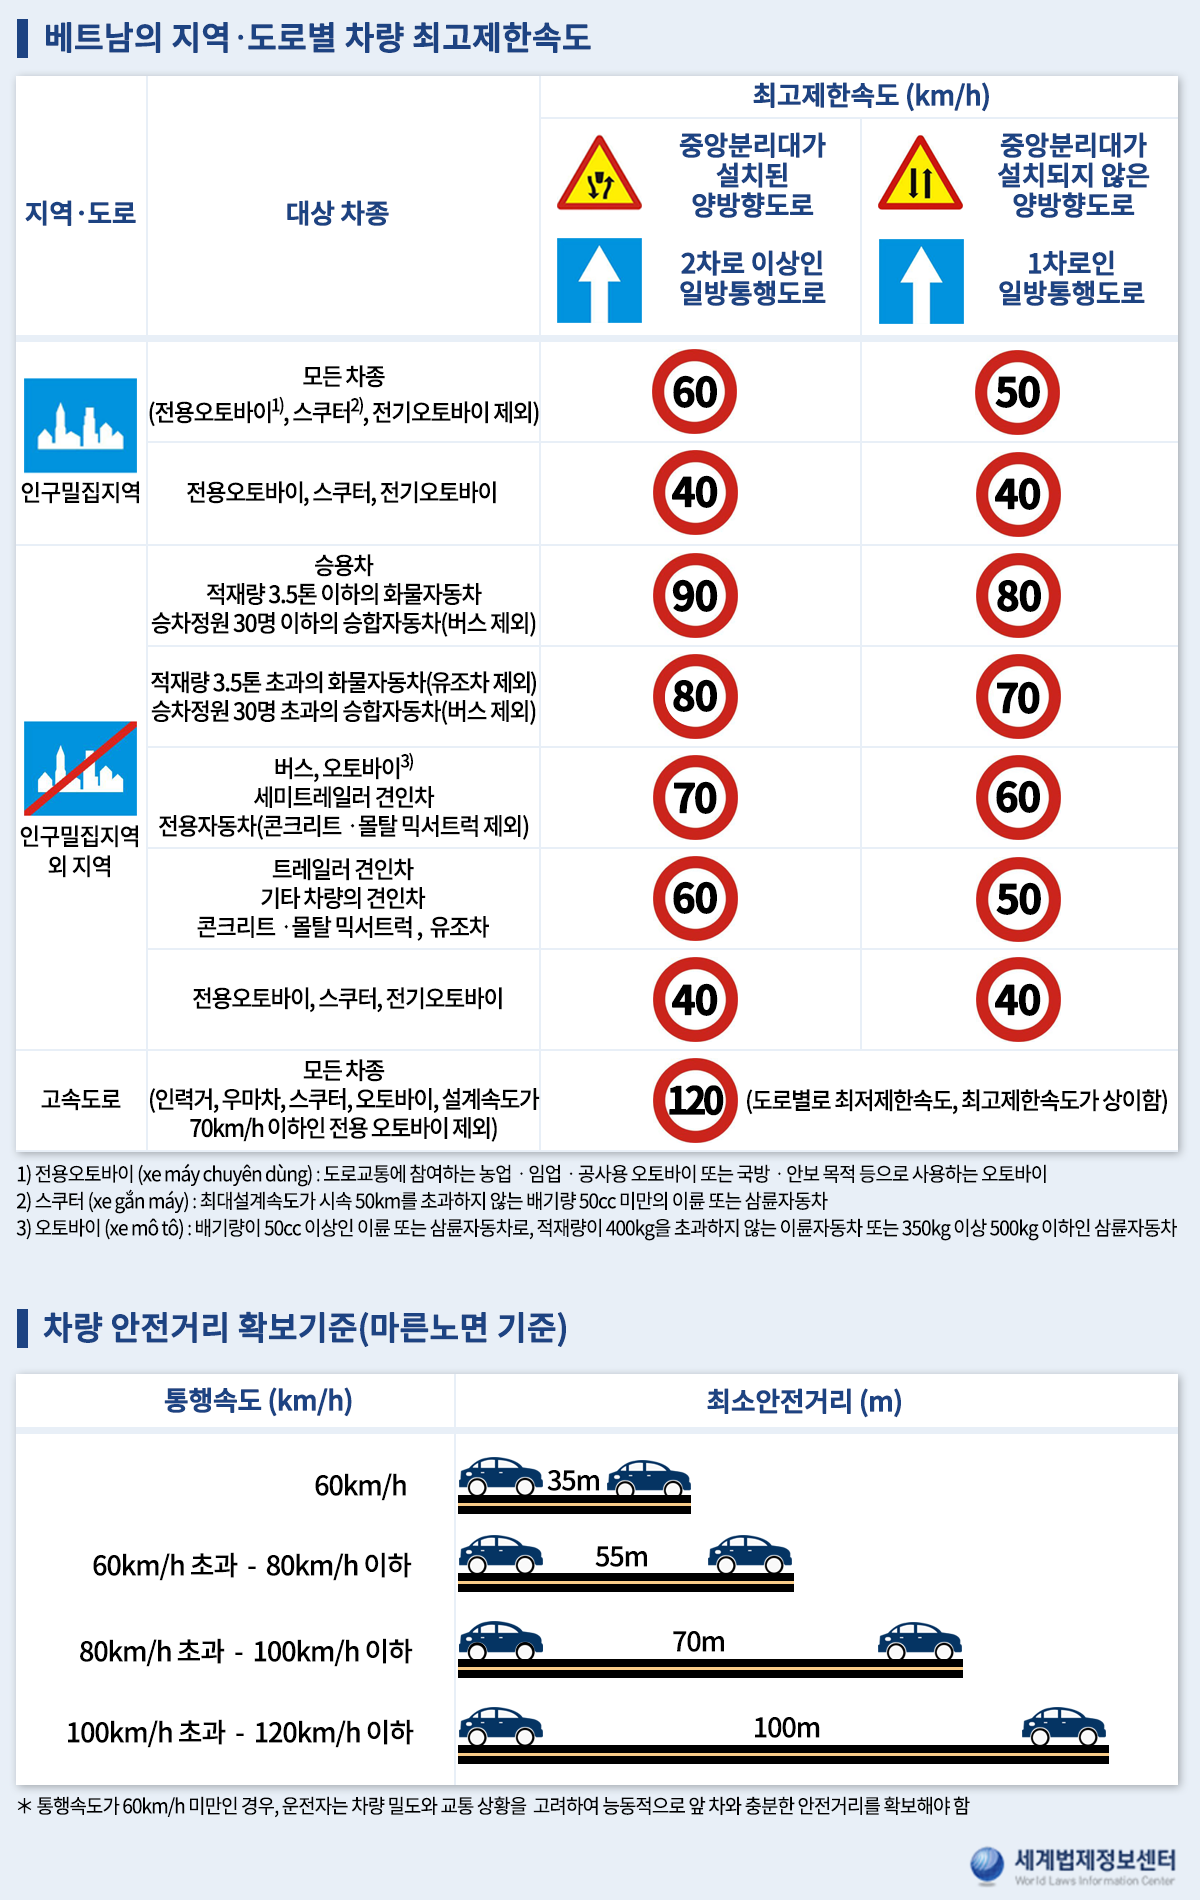 베트남의 지역-도로별 차량 최고제한속도 및 차량 안전거리 확보기준(마른노면 기준)